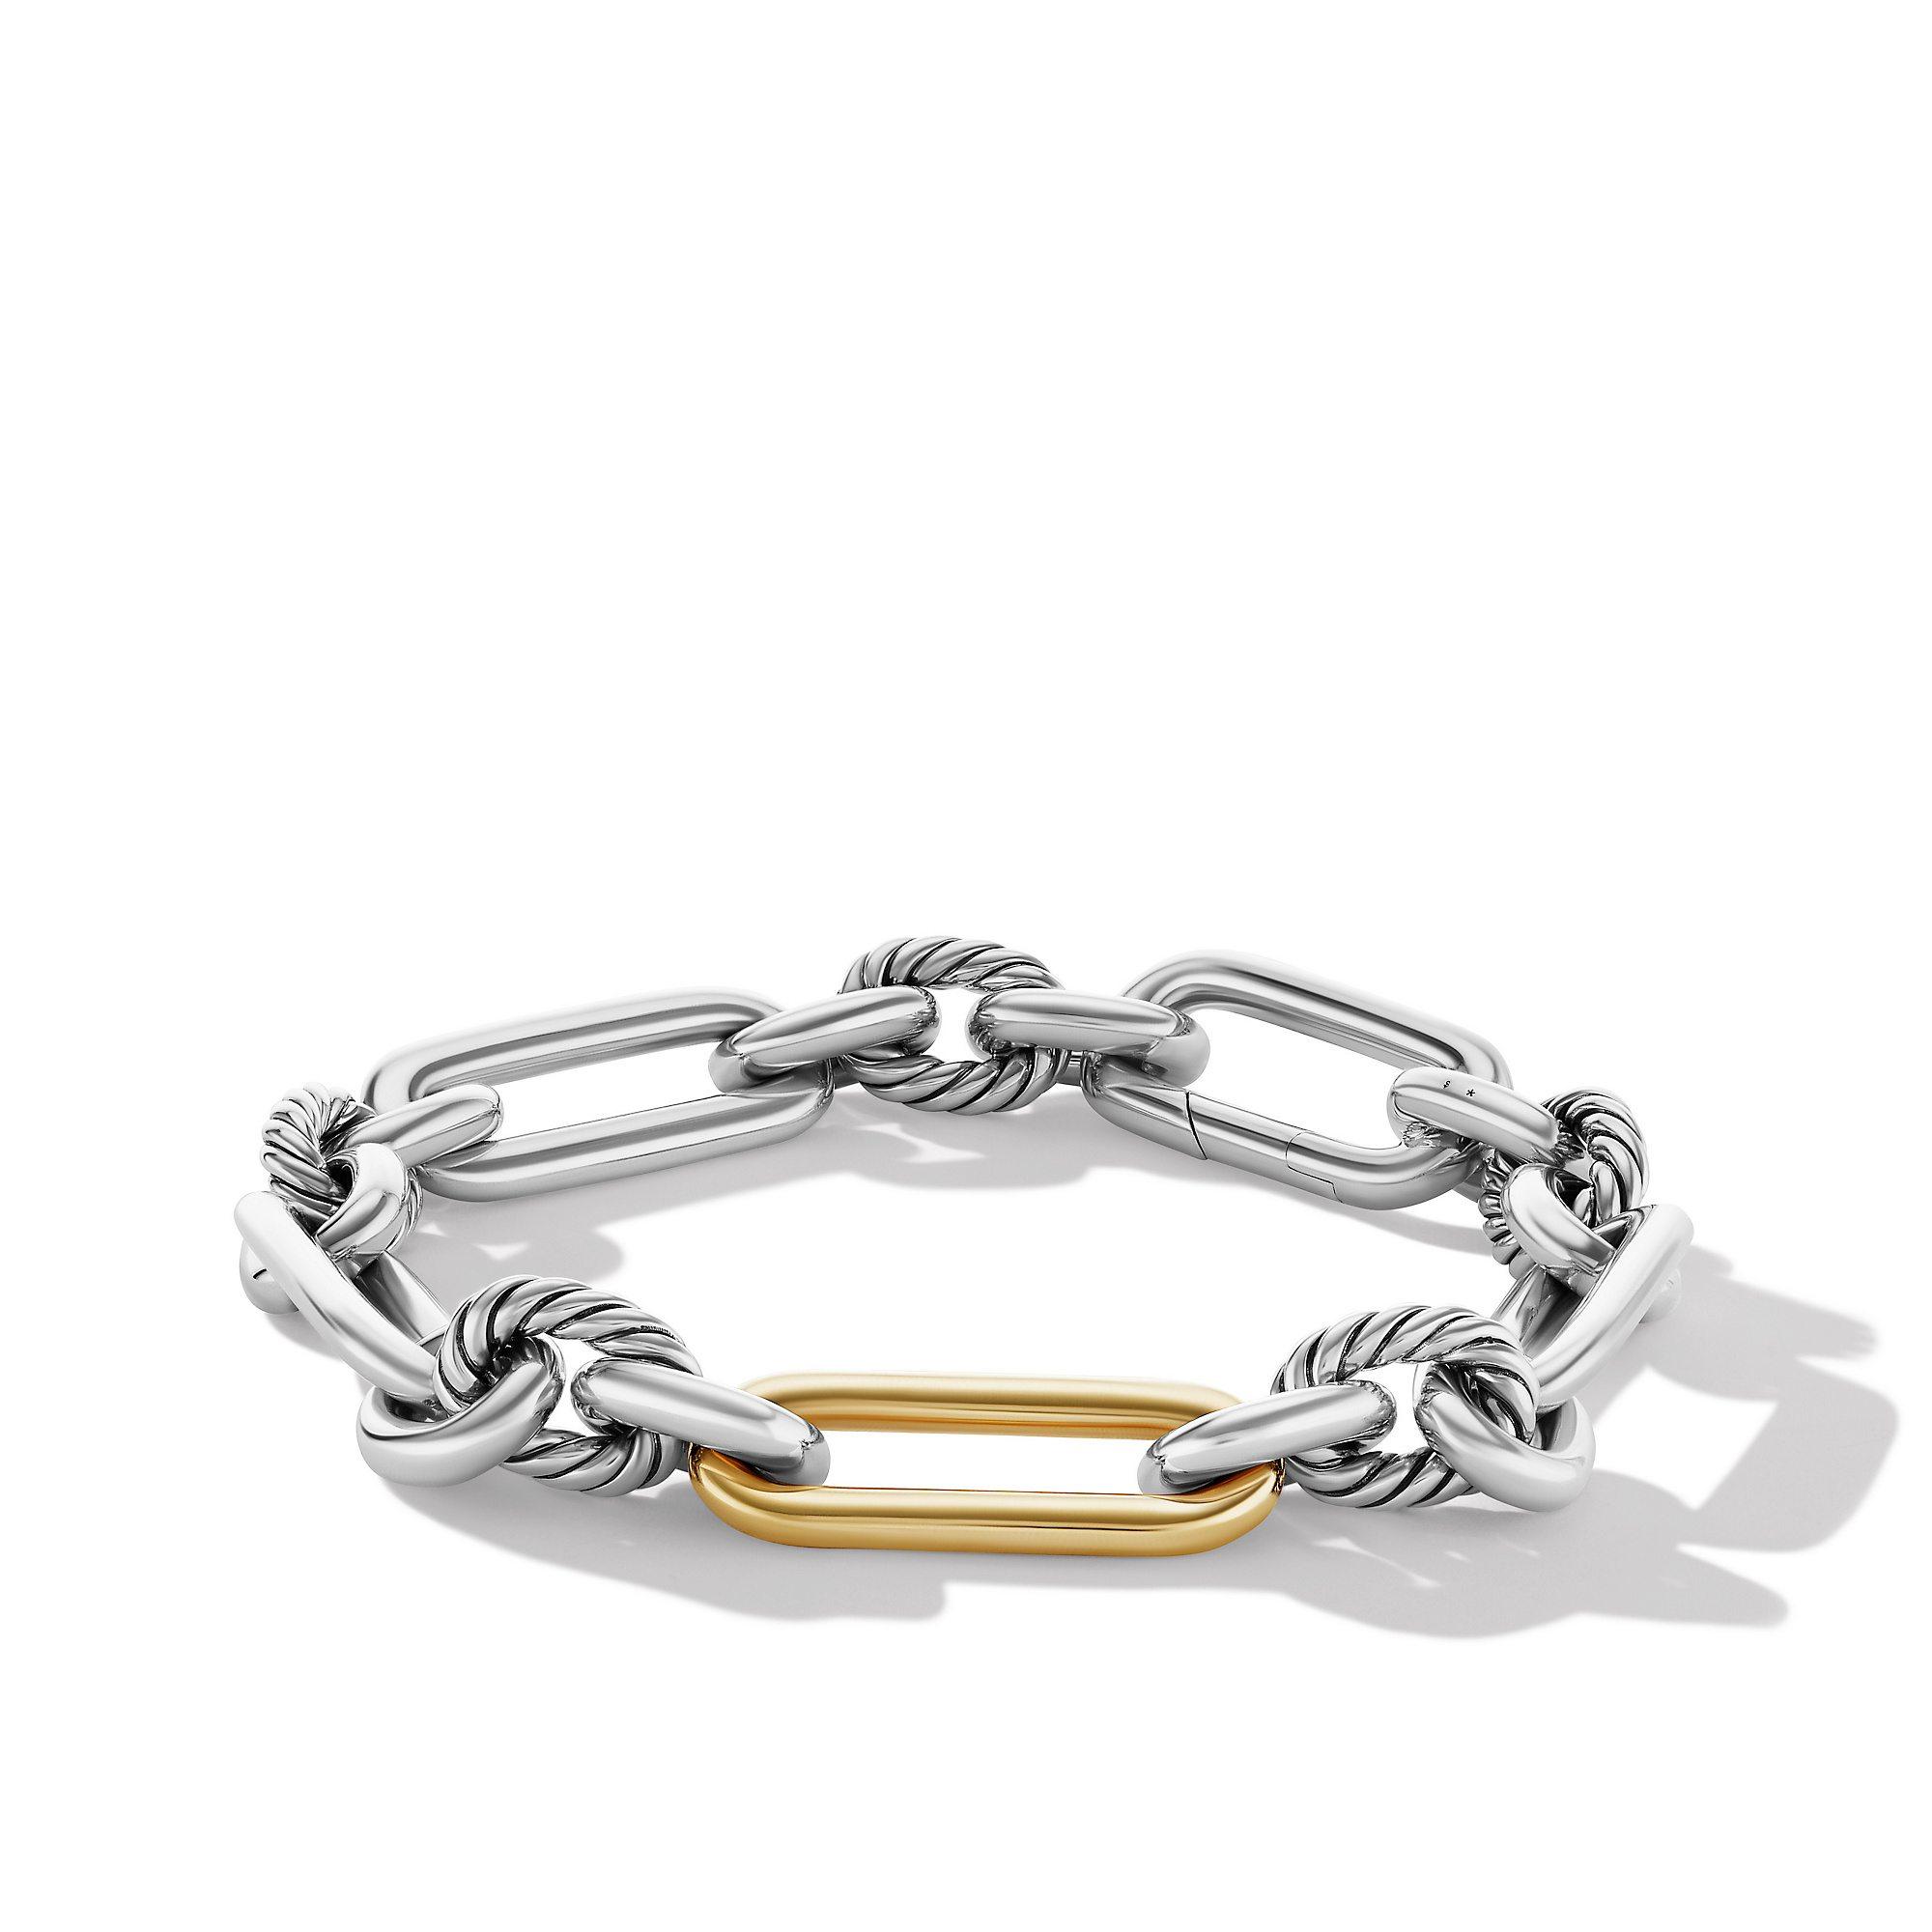 David Yurman | Lexington Chain Bracelet with 18K Yellow Gold | Side View